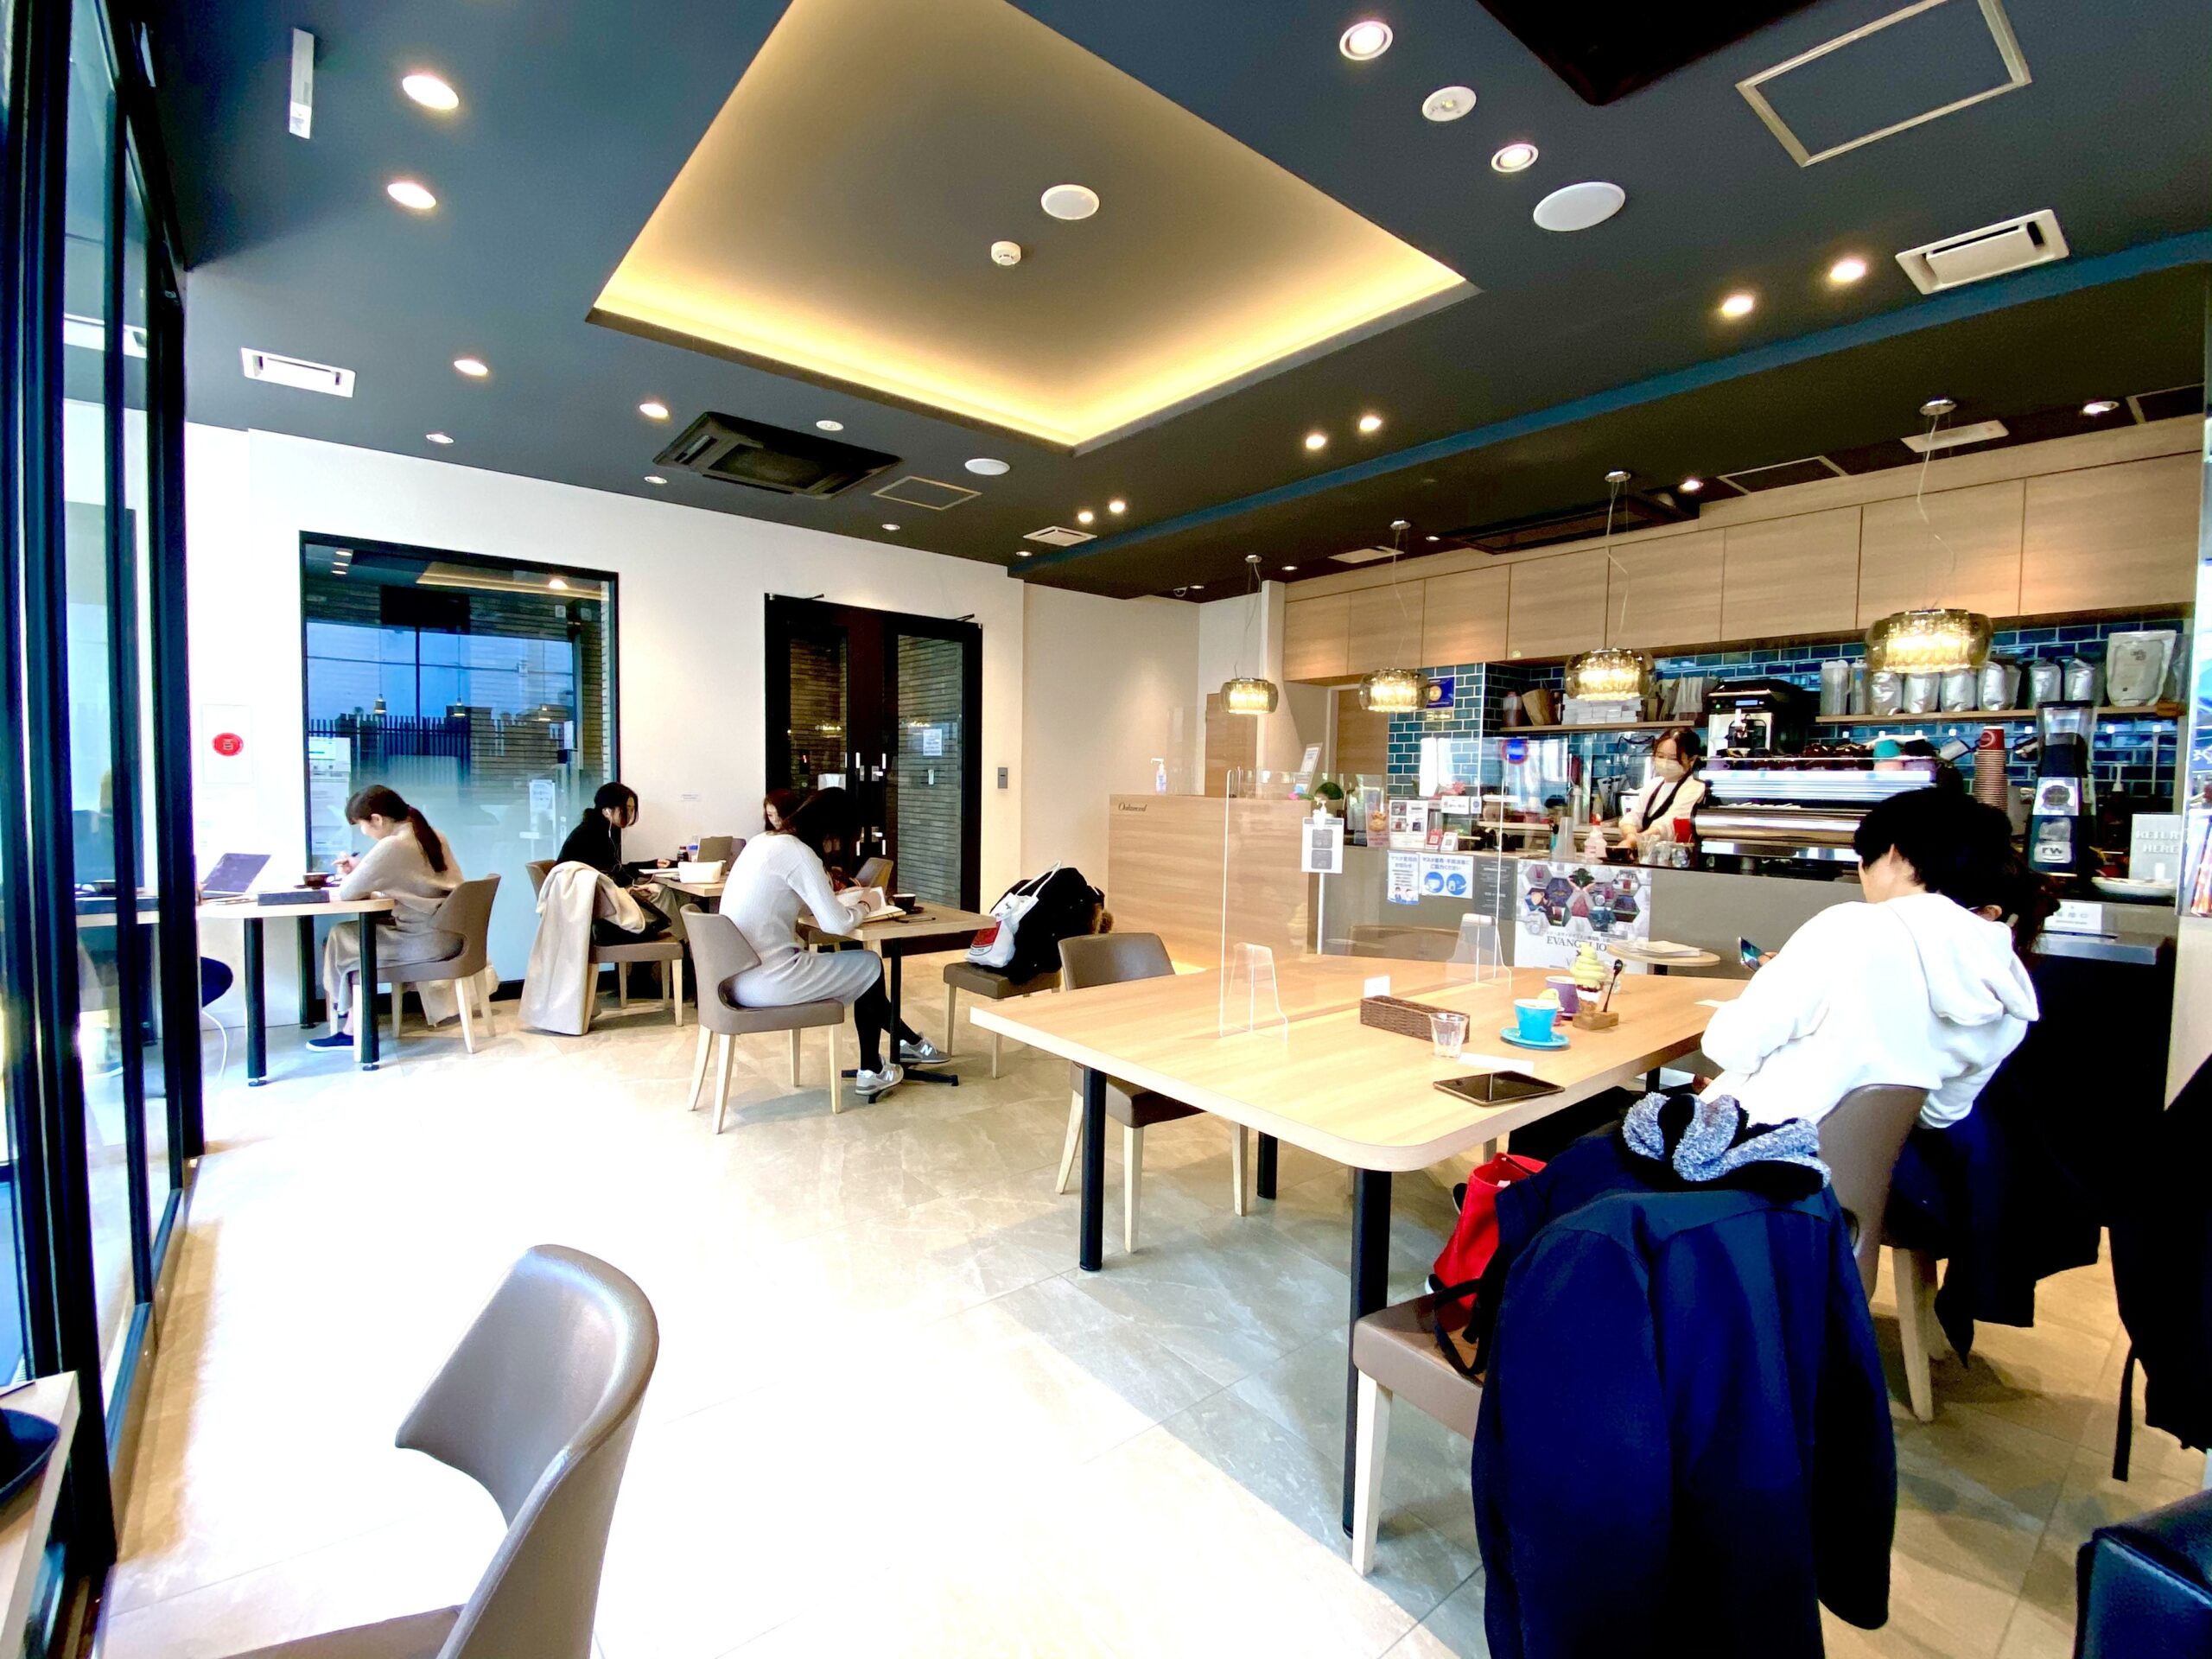 ブルートラベルエンジニア パソコン作業（プログラミング学習環境）におすすめのカフェ|新宿・高田馬場 ViTO（ヴィト） Coffee 西新宿店